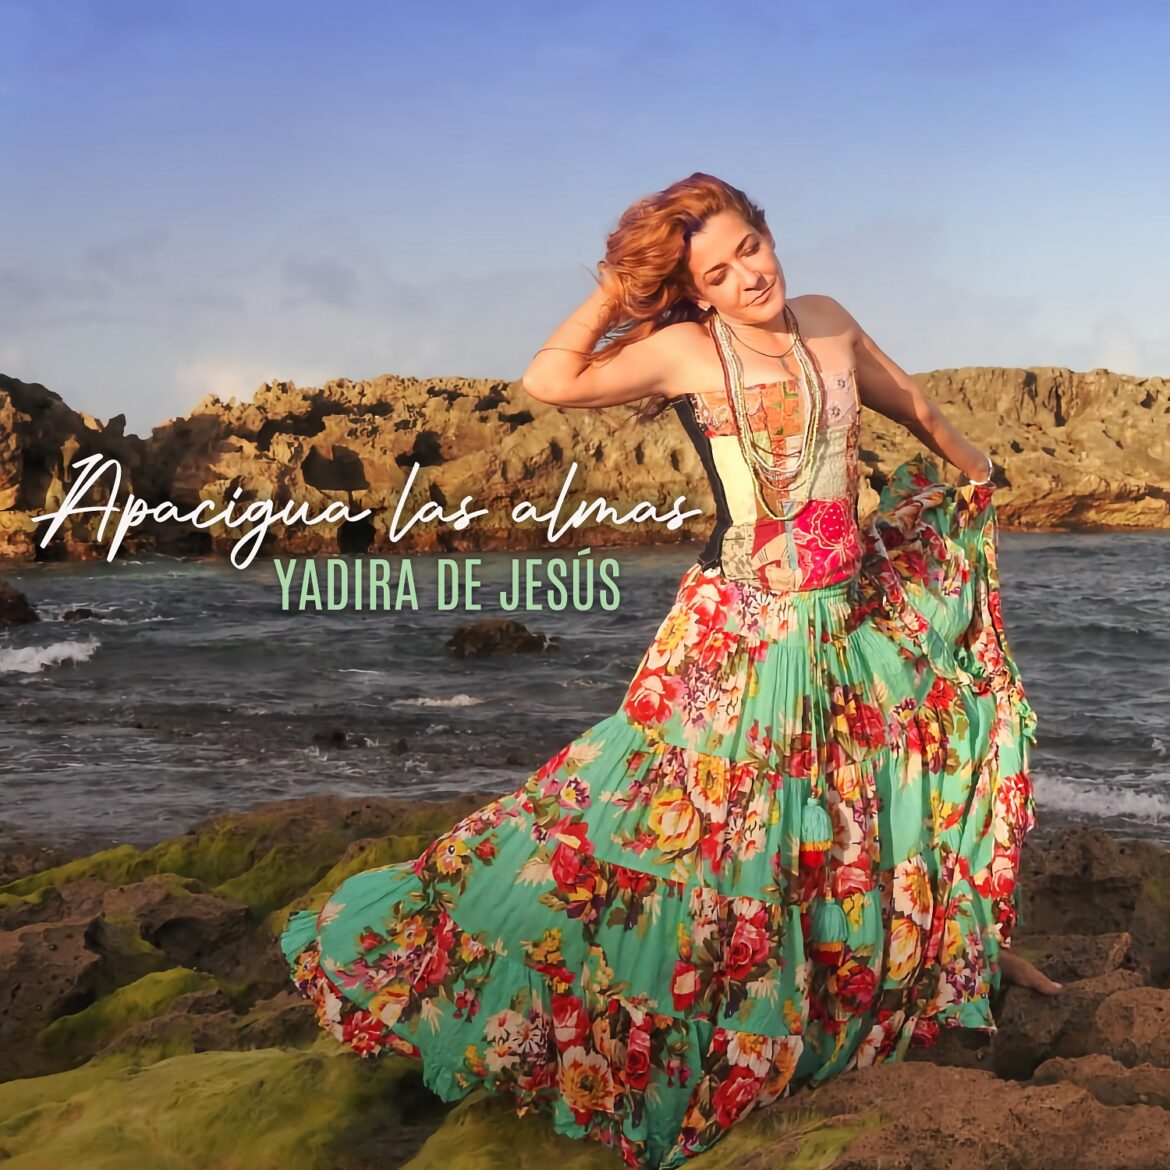 La cantautora y pianista puertorriqueña Yadira De Jesús lanza sencillo que insta a respetar todas las creencias religiosas